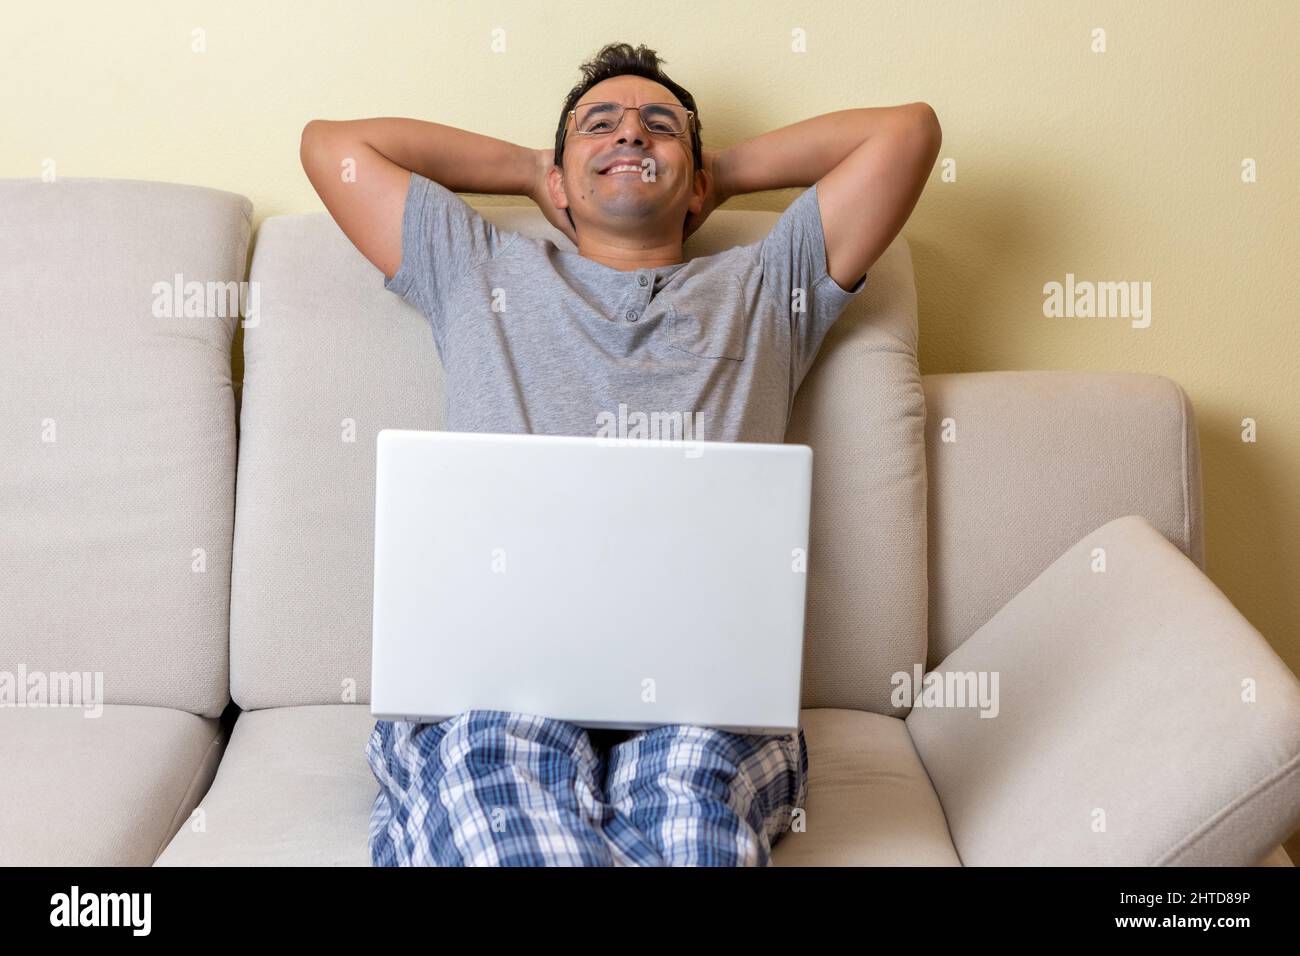 Un jeune homme heureux et satisfait assis sur un canapé avec un ordinateur portable à genoux Banque D'Images